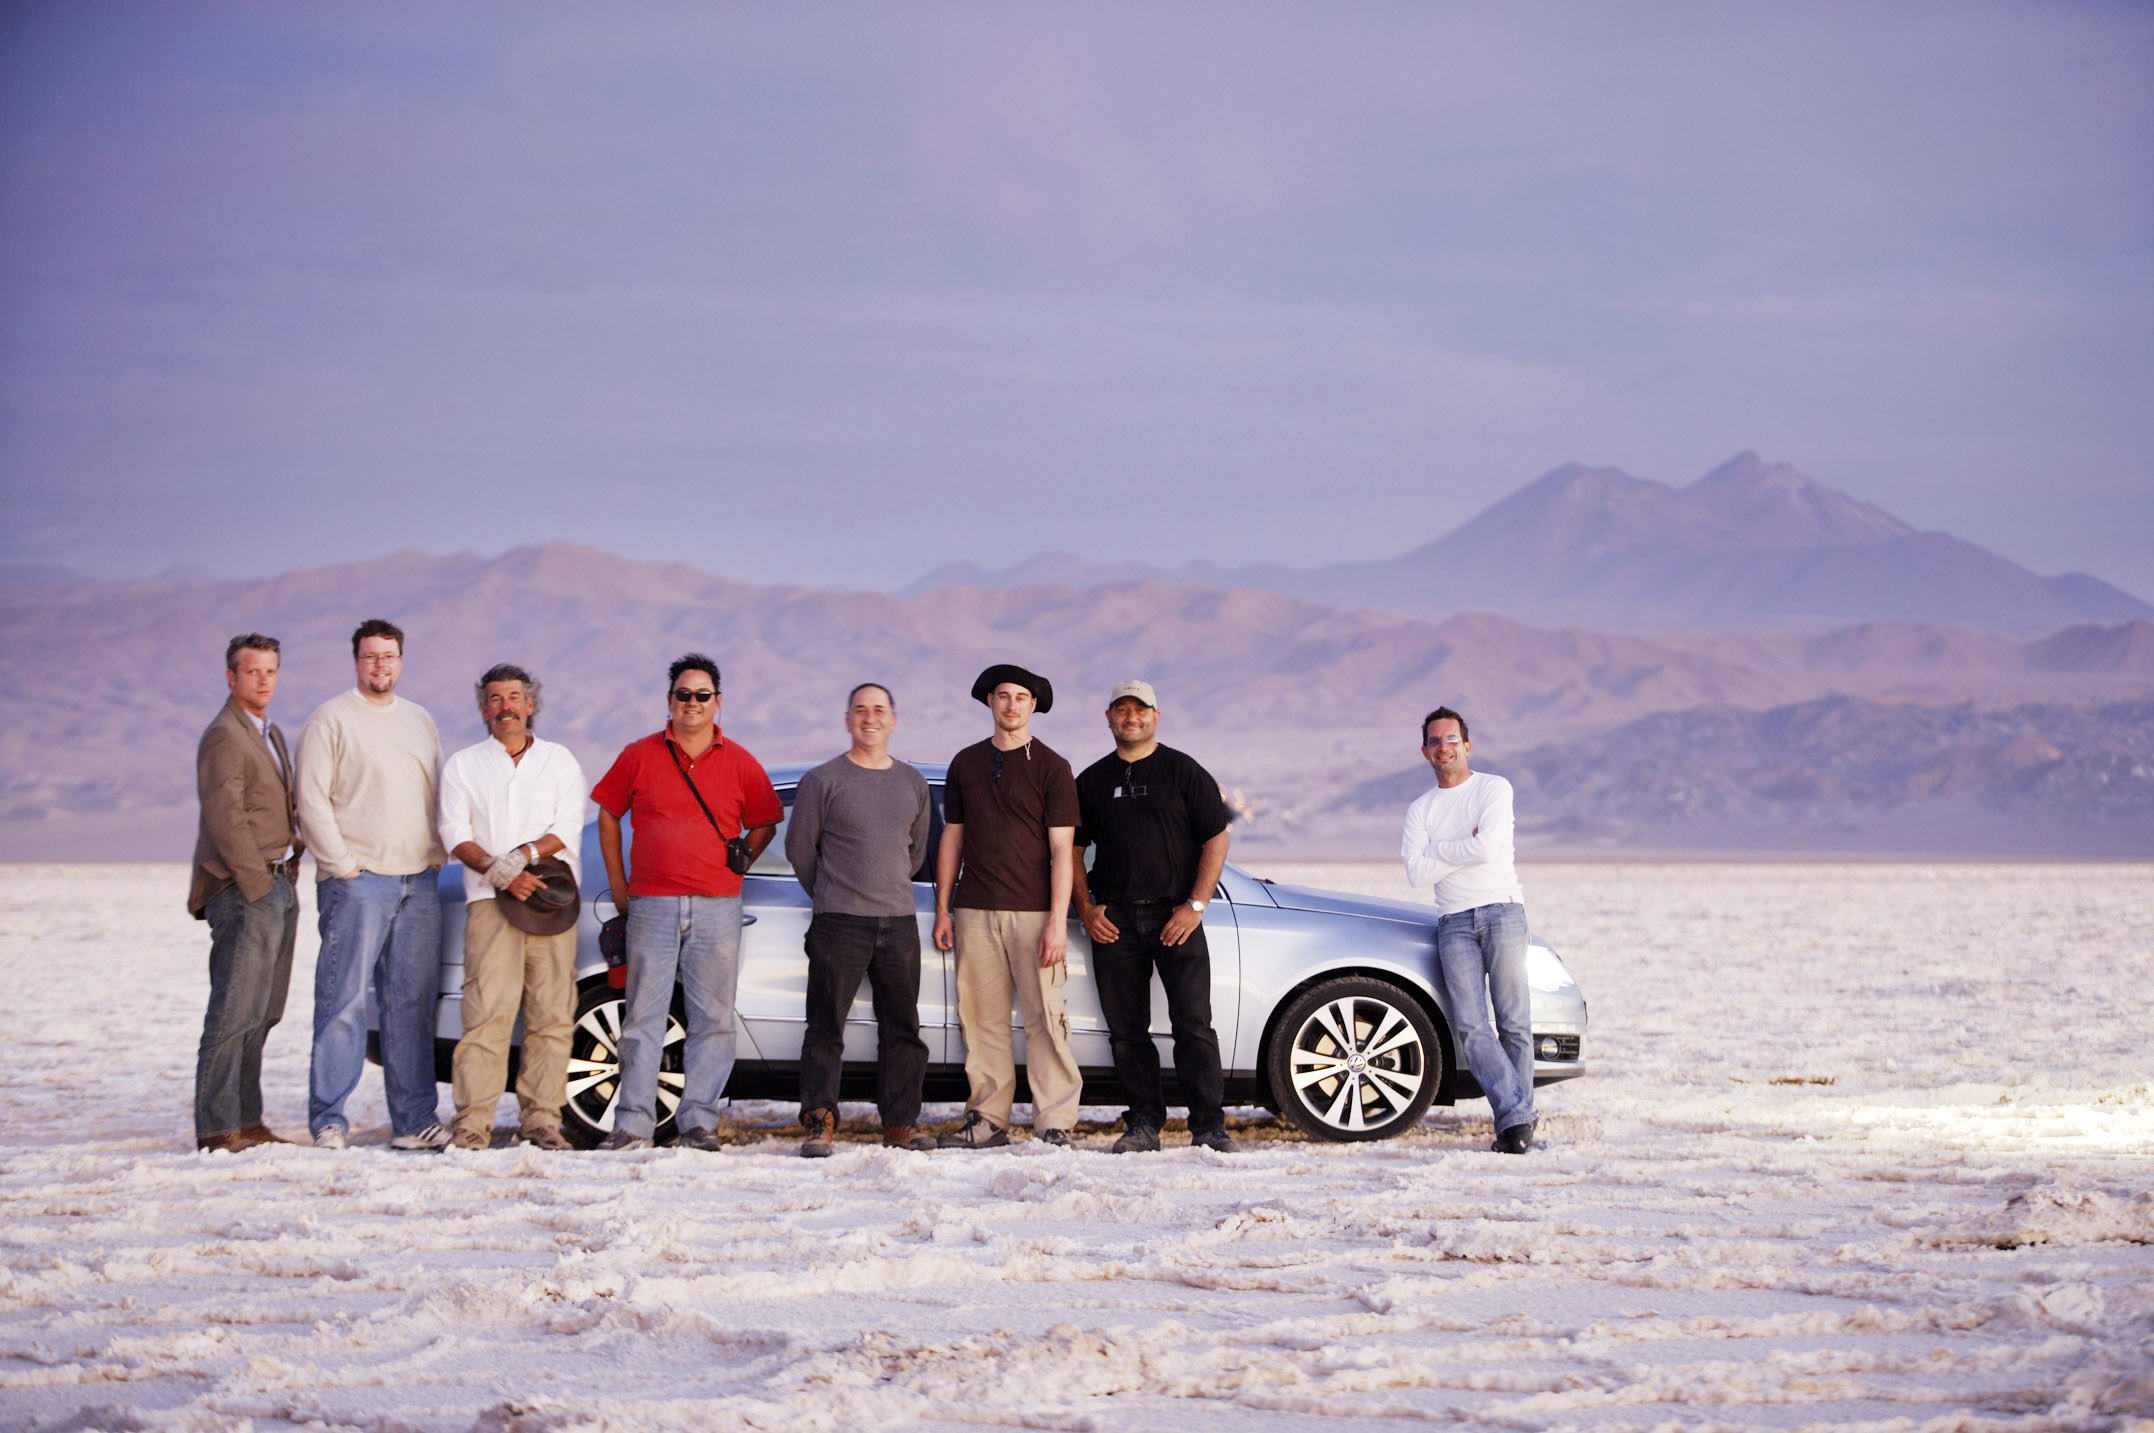 (2005) VW Passat official photo shoot & Commercial; Chilie, S.A. Stunt driver: Mikal Kartvedt Photographer: Michele DeVries